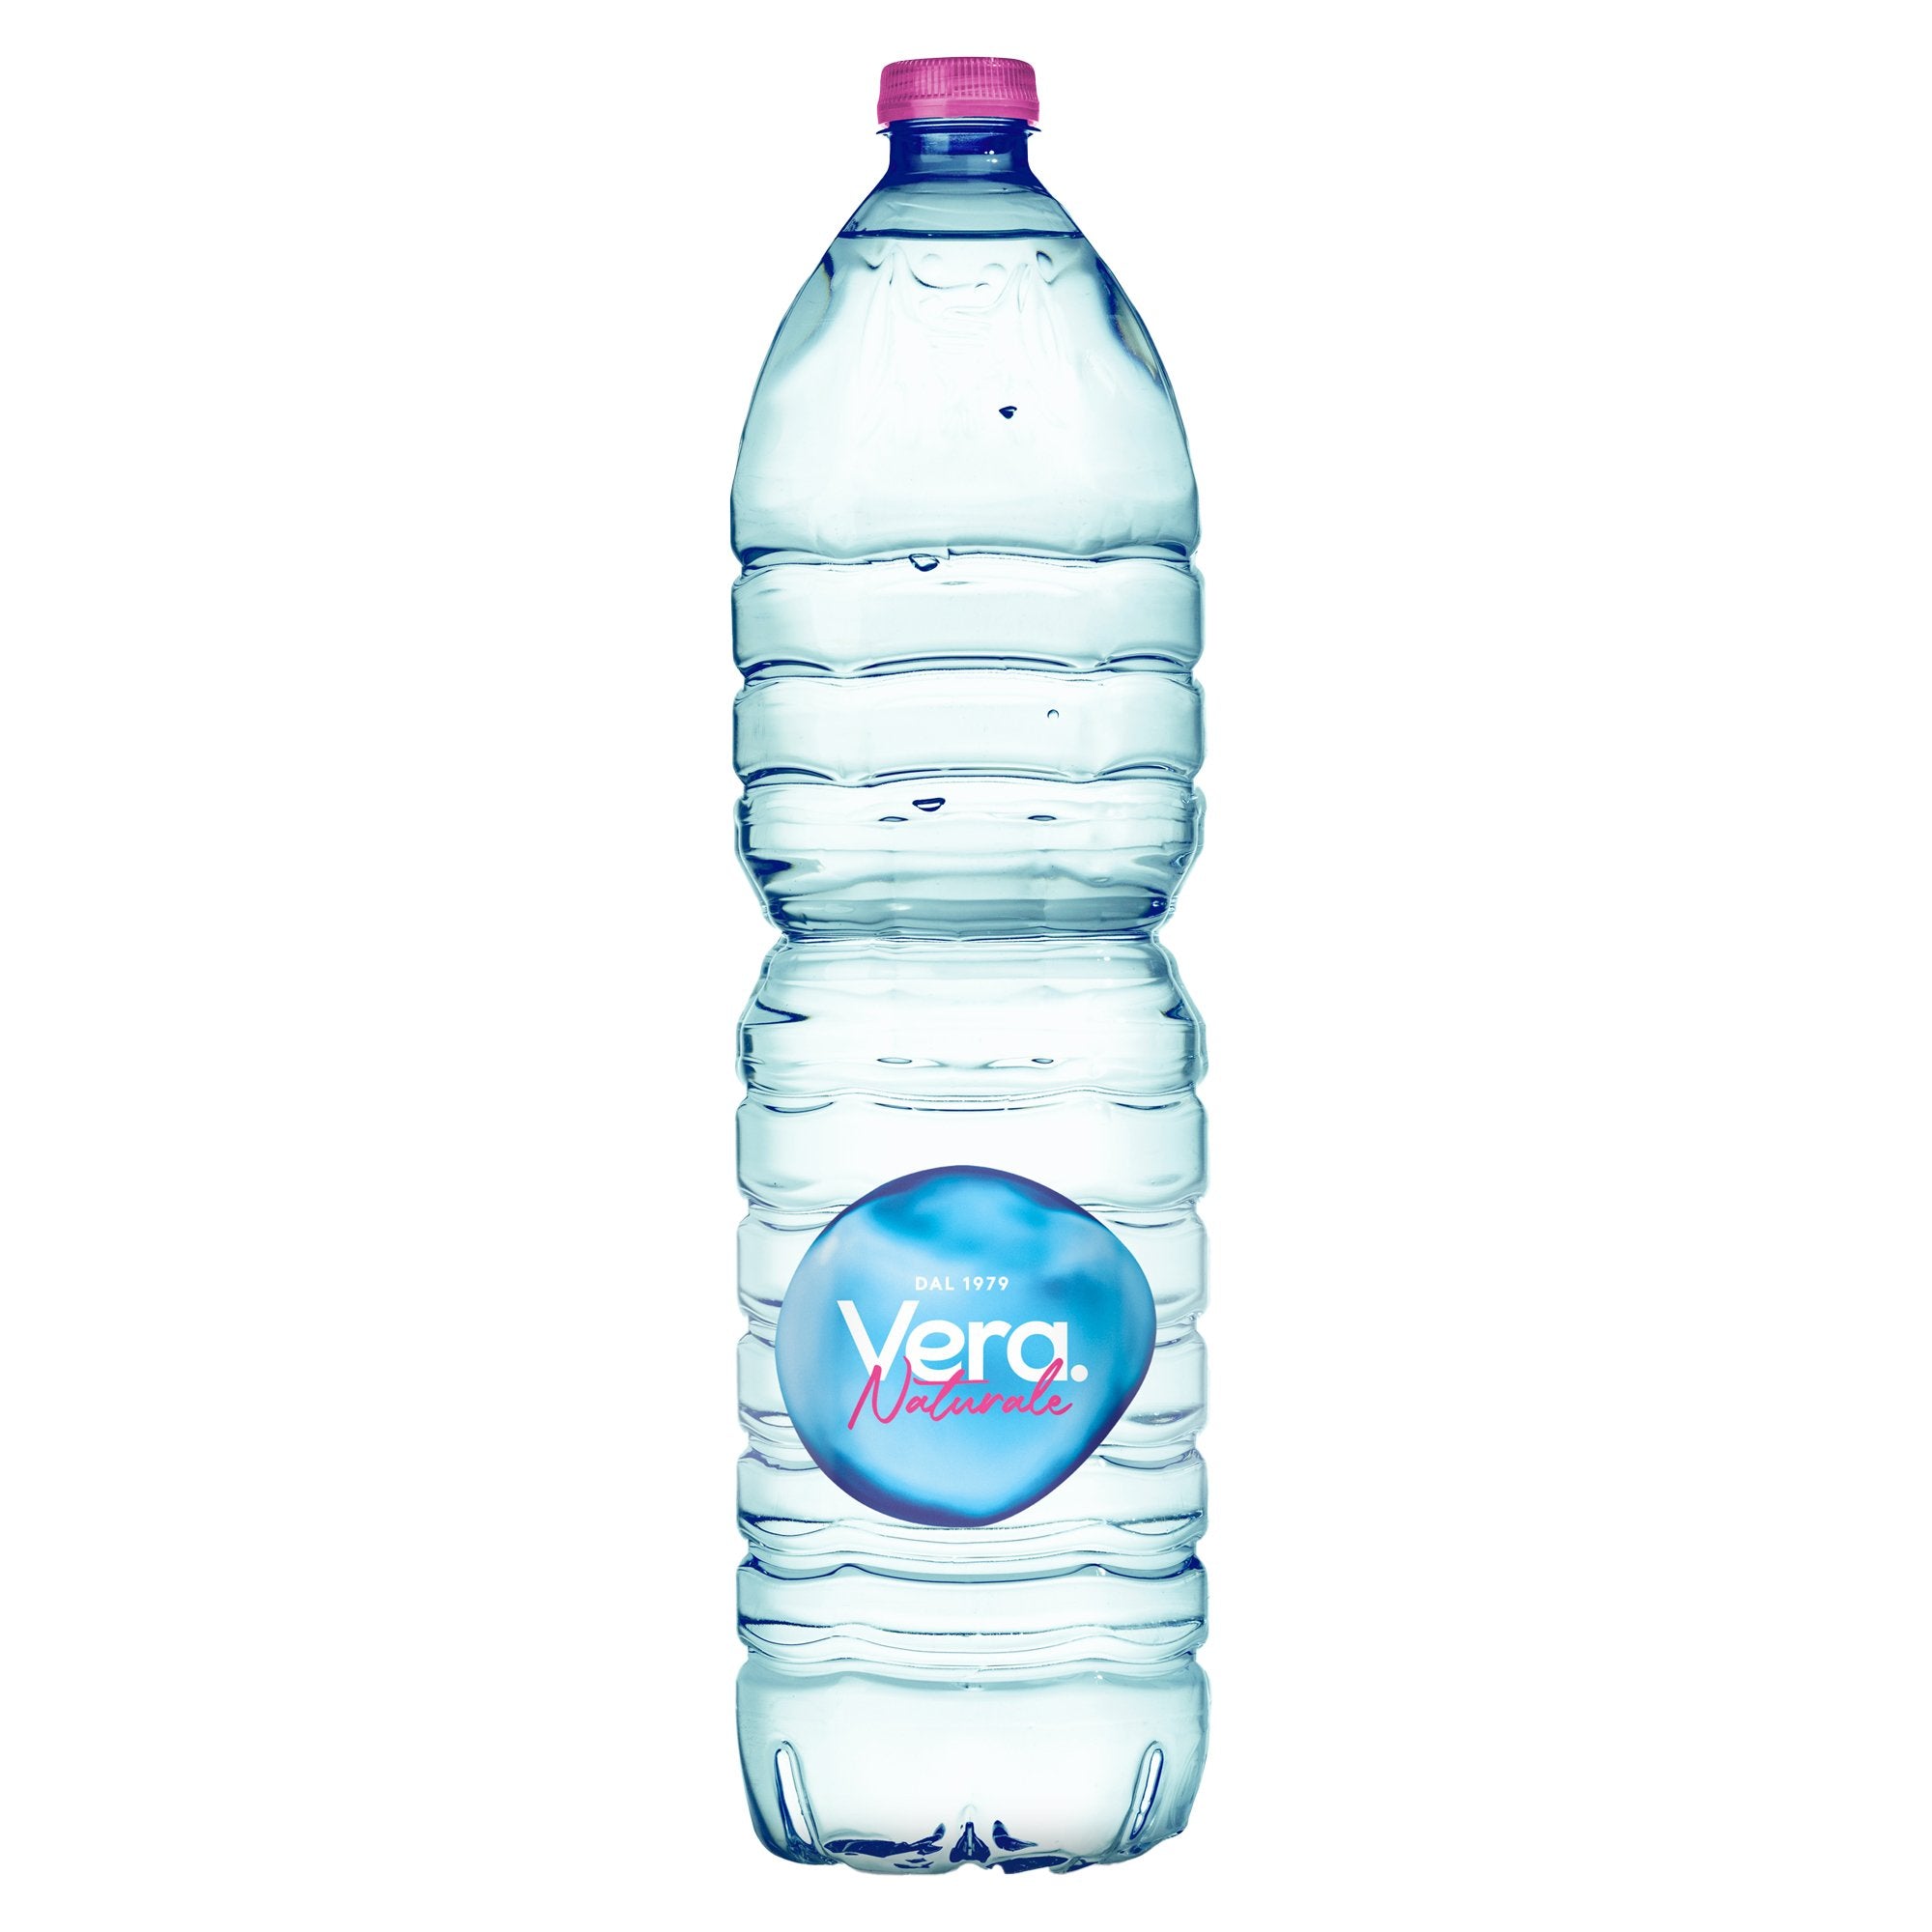 vera-acqua-naturale-bottiglia-pet-1-5lt